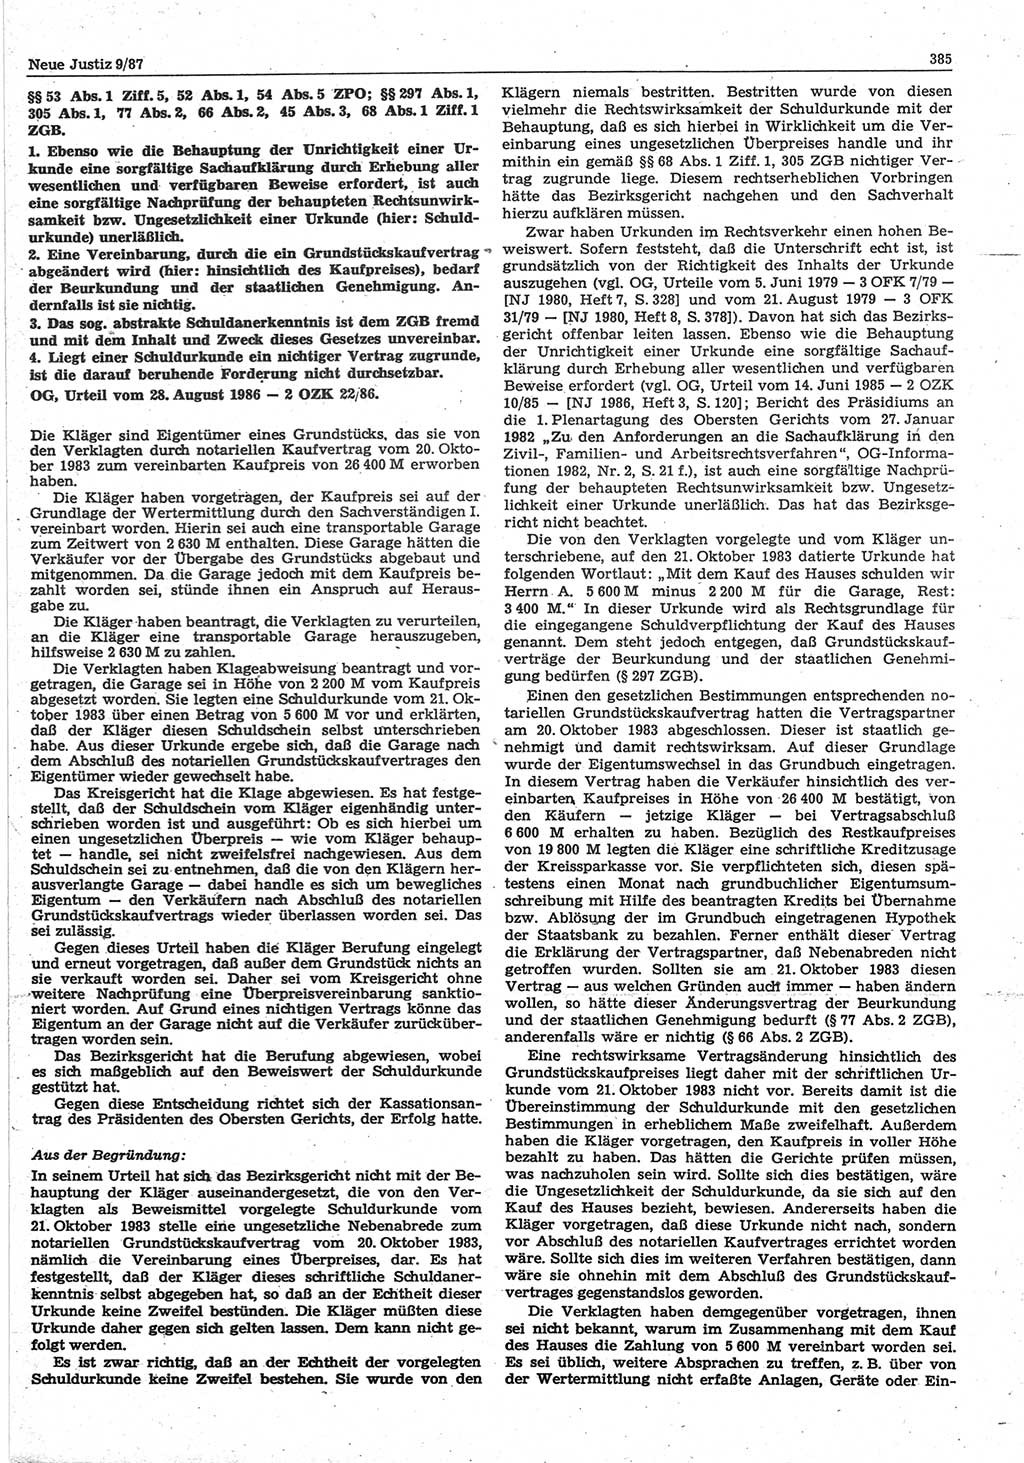 Neue Justiz (NJ), Zeitschrift für sozialistisches Recht und Gesetzlichkeit [Deutsche Demokratische Republik (DDR)], 41. Jahrgang 1987, Seite 385 (NJ DDR 1987, S. 385)